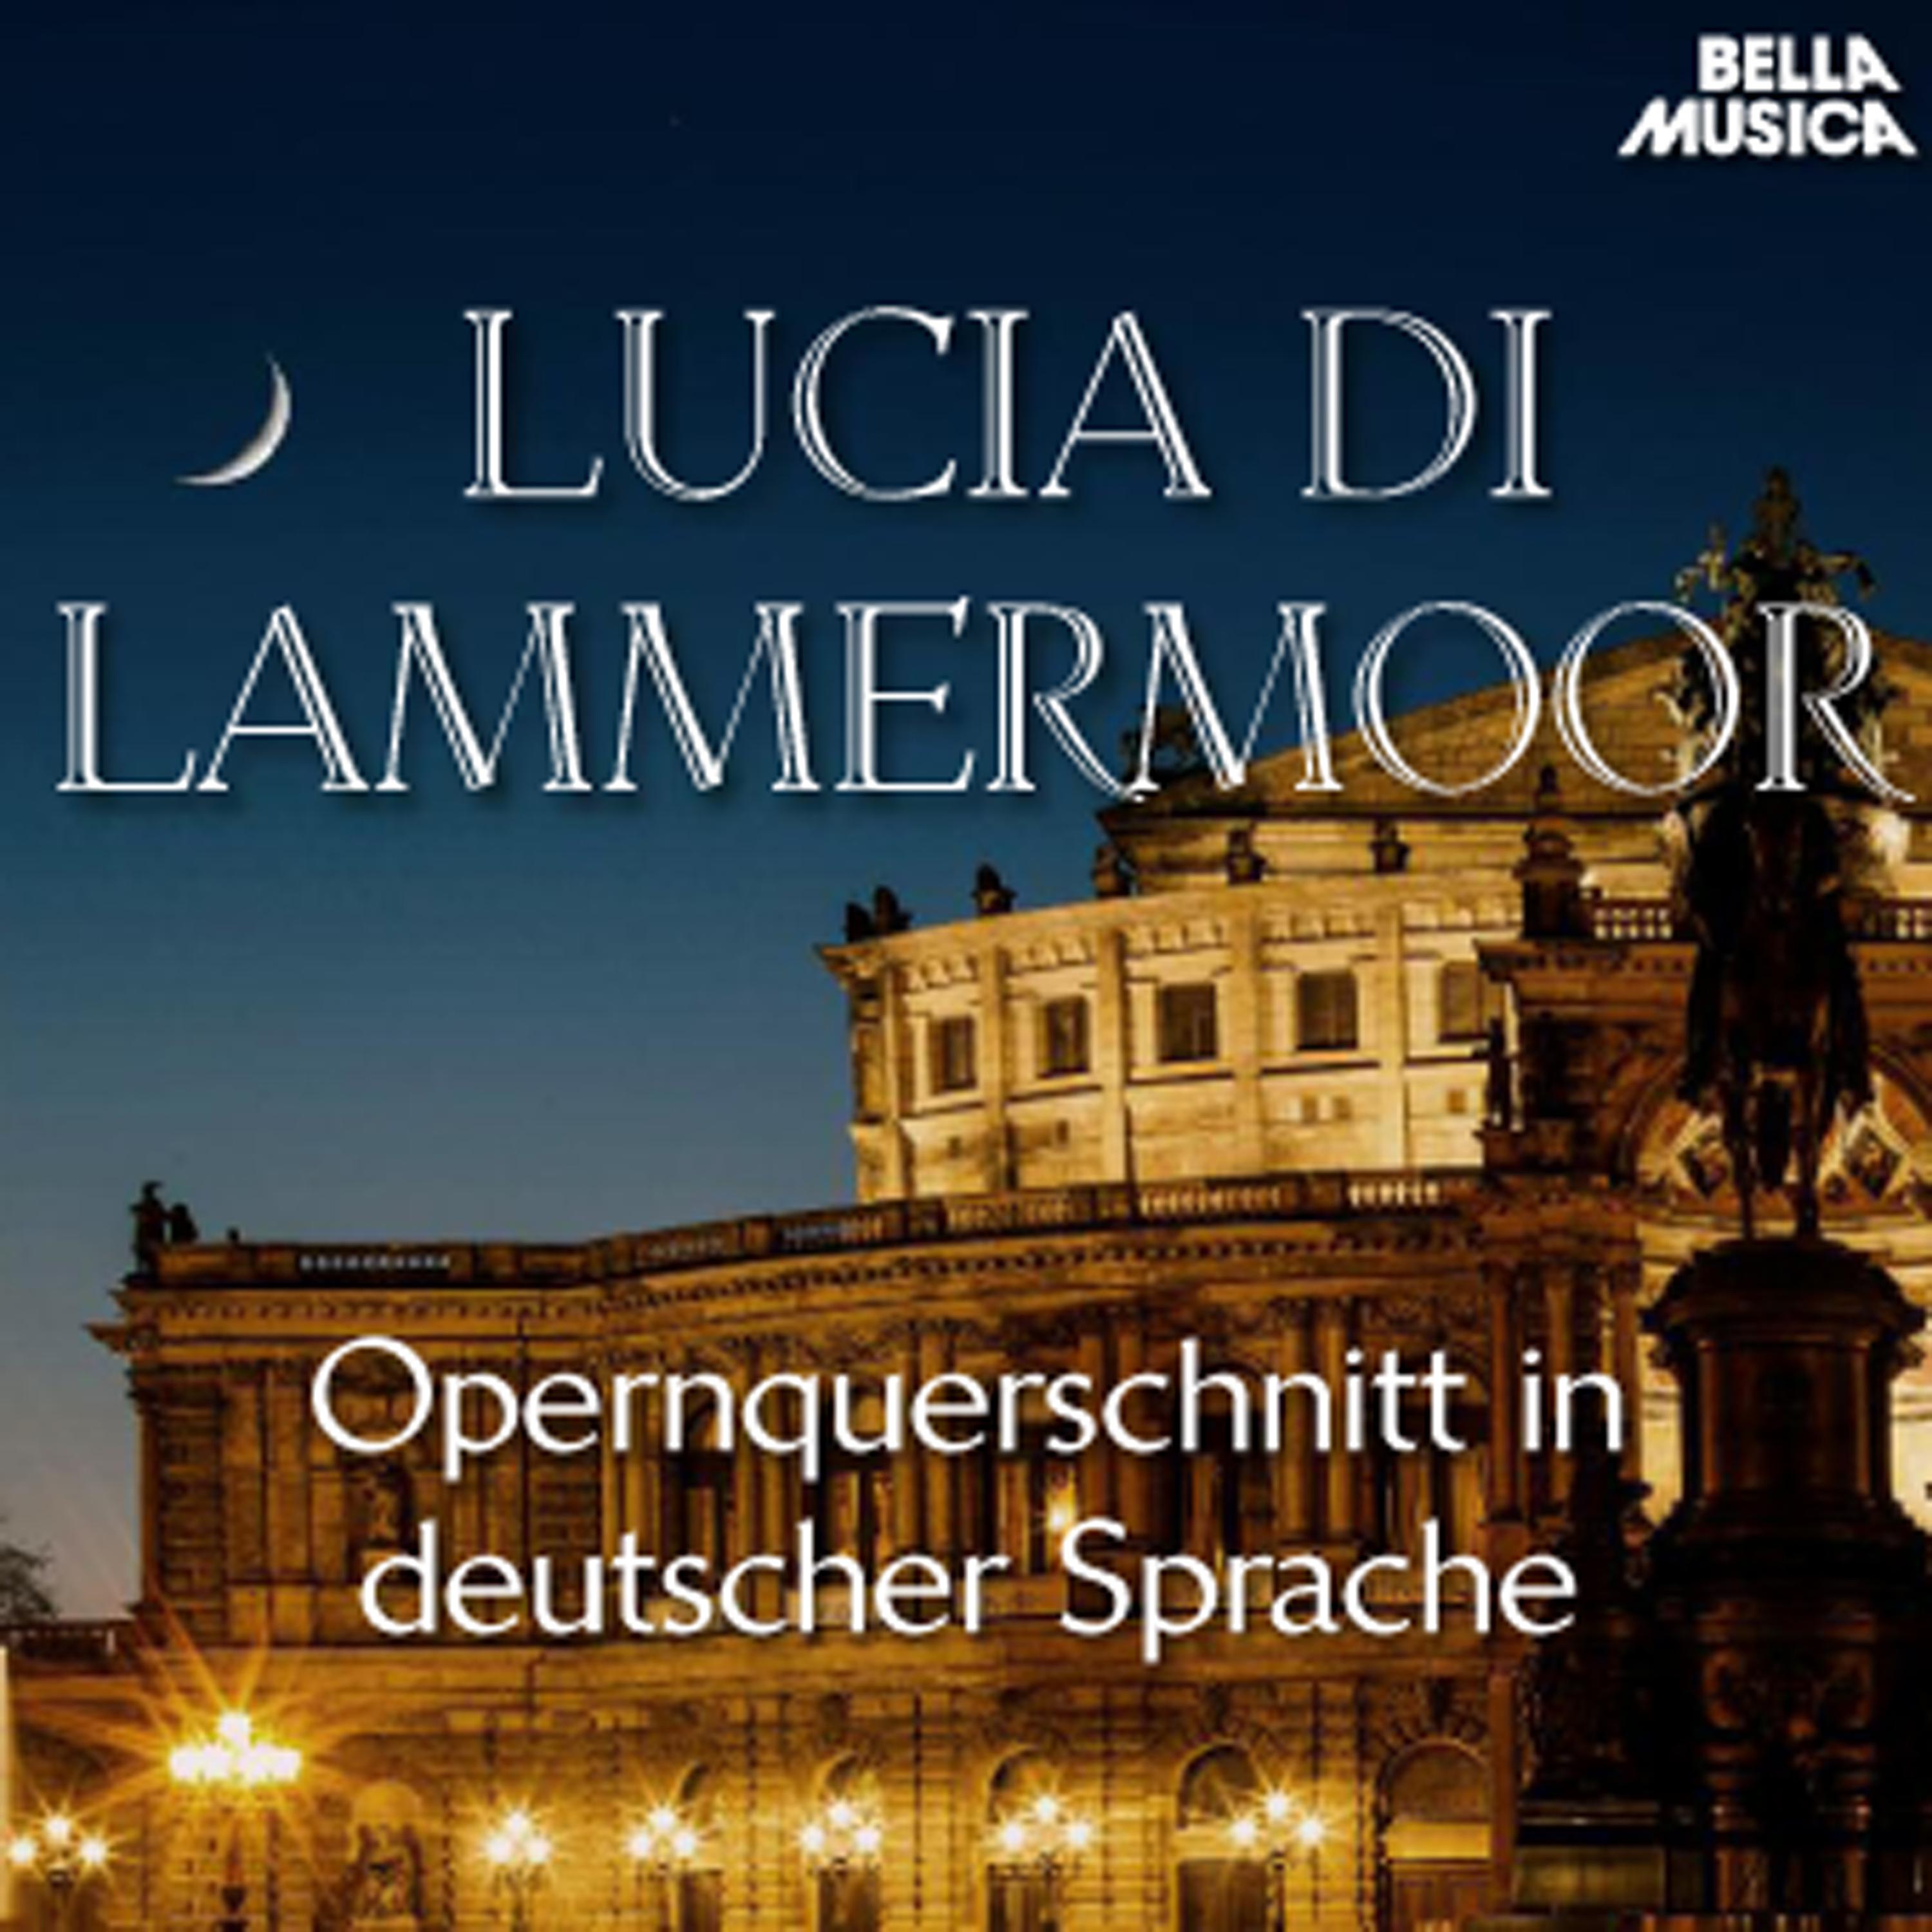 Lucia di Lammermoor: Wo ist Lucia? - Im Augenblick erscheint sie hier